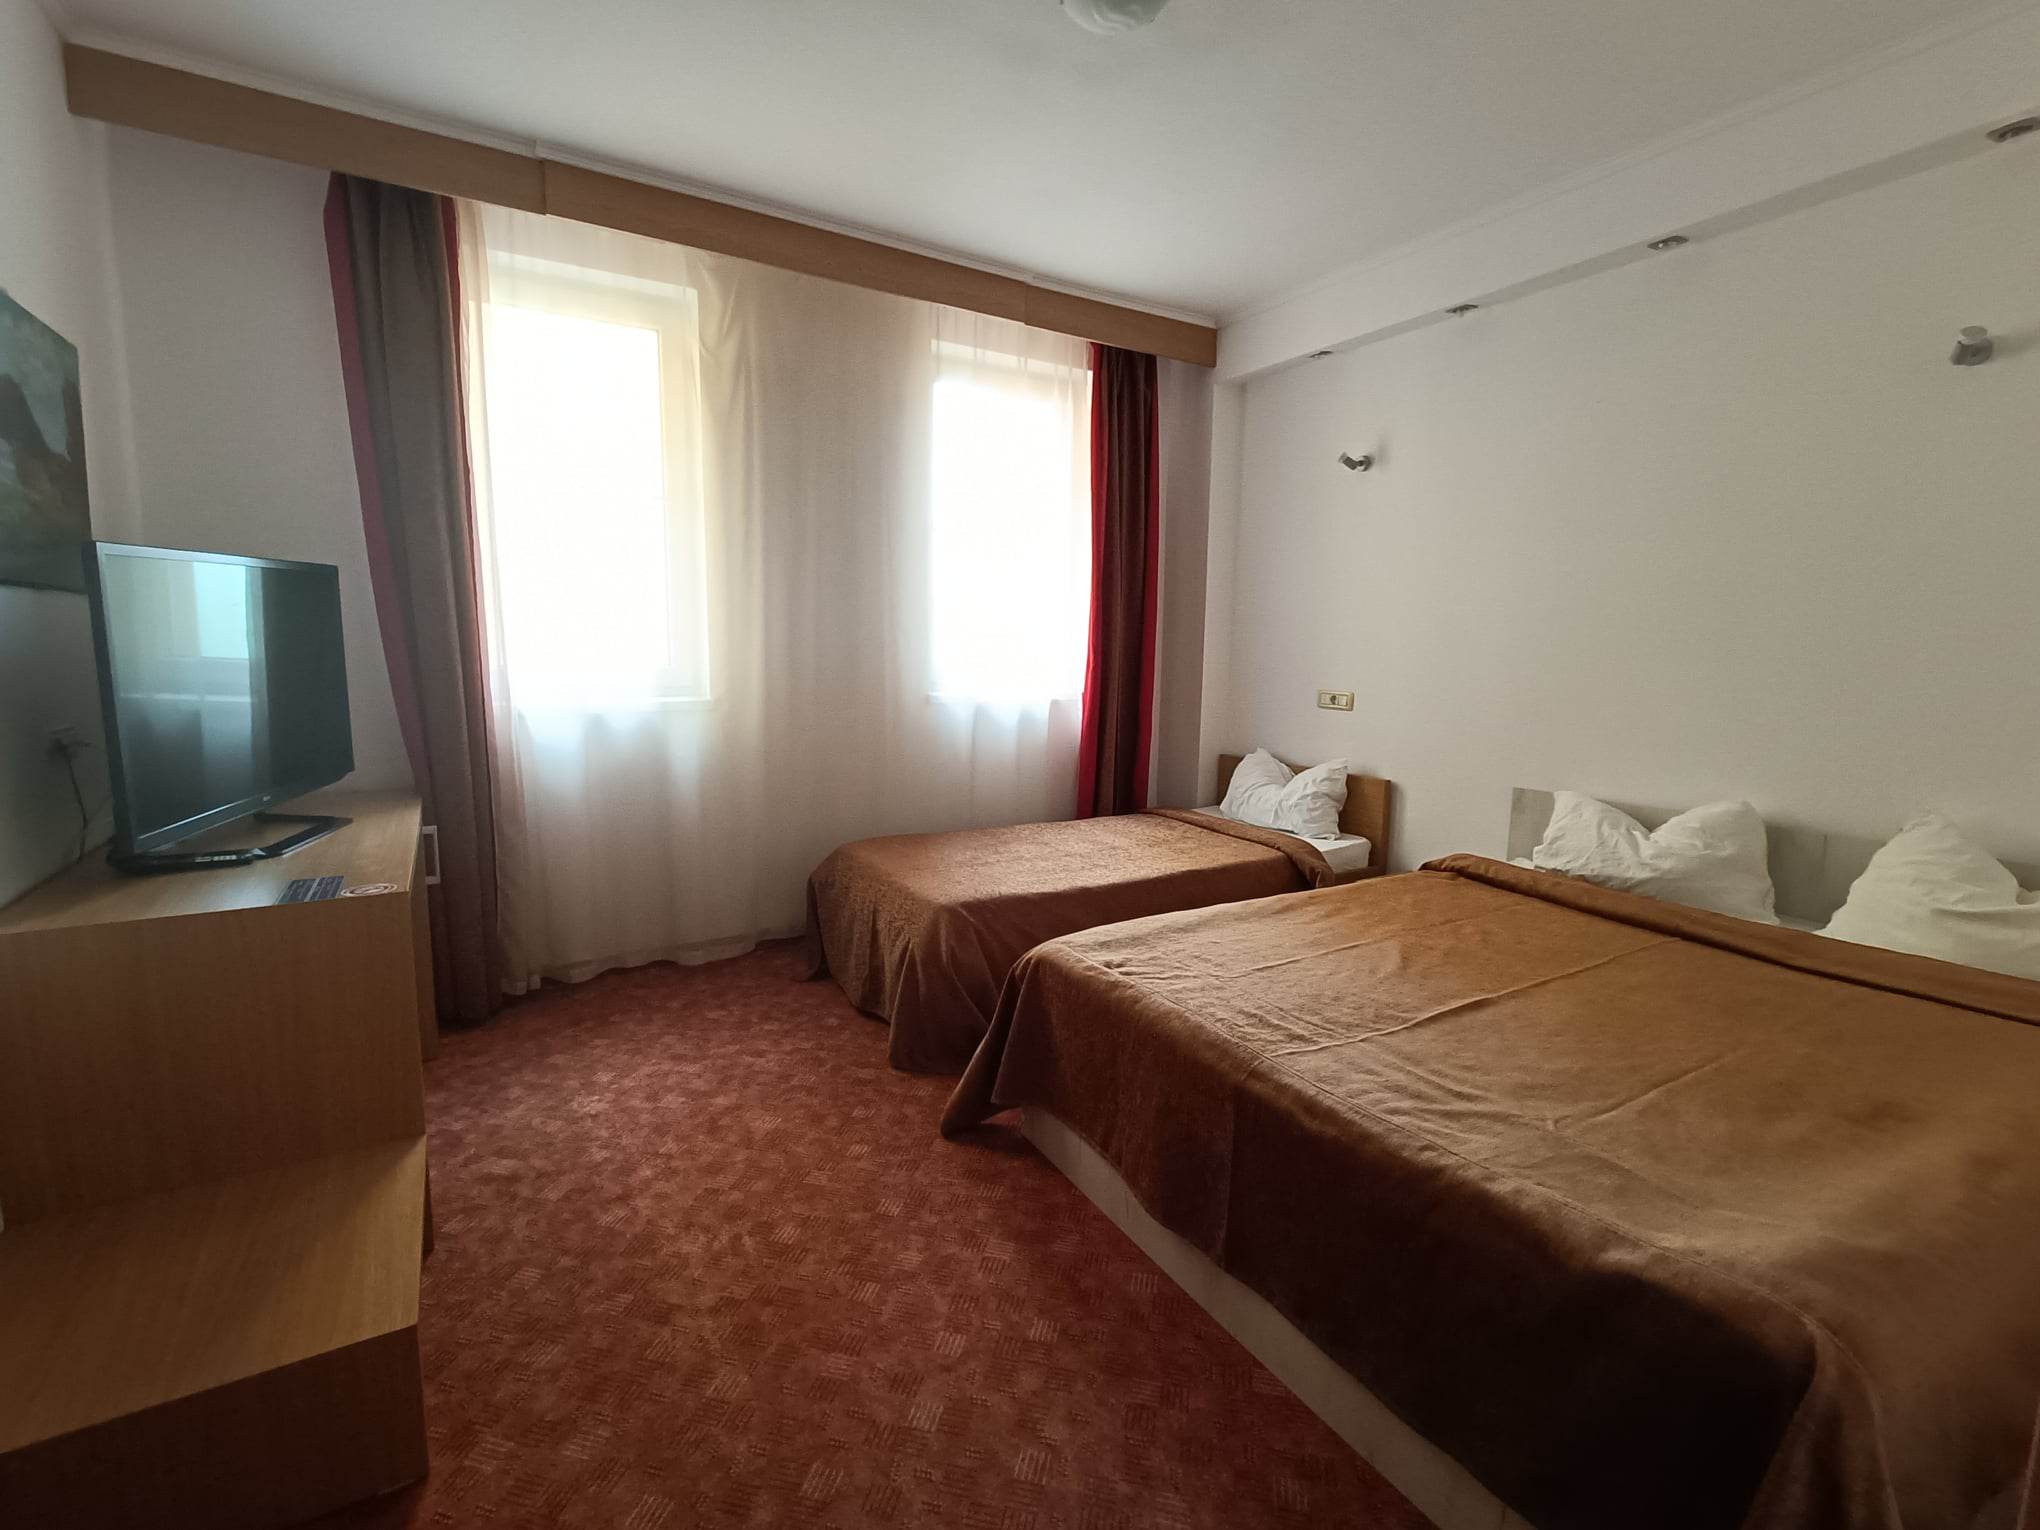 Cazare in Arad - HOTEL RIGA - Arad